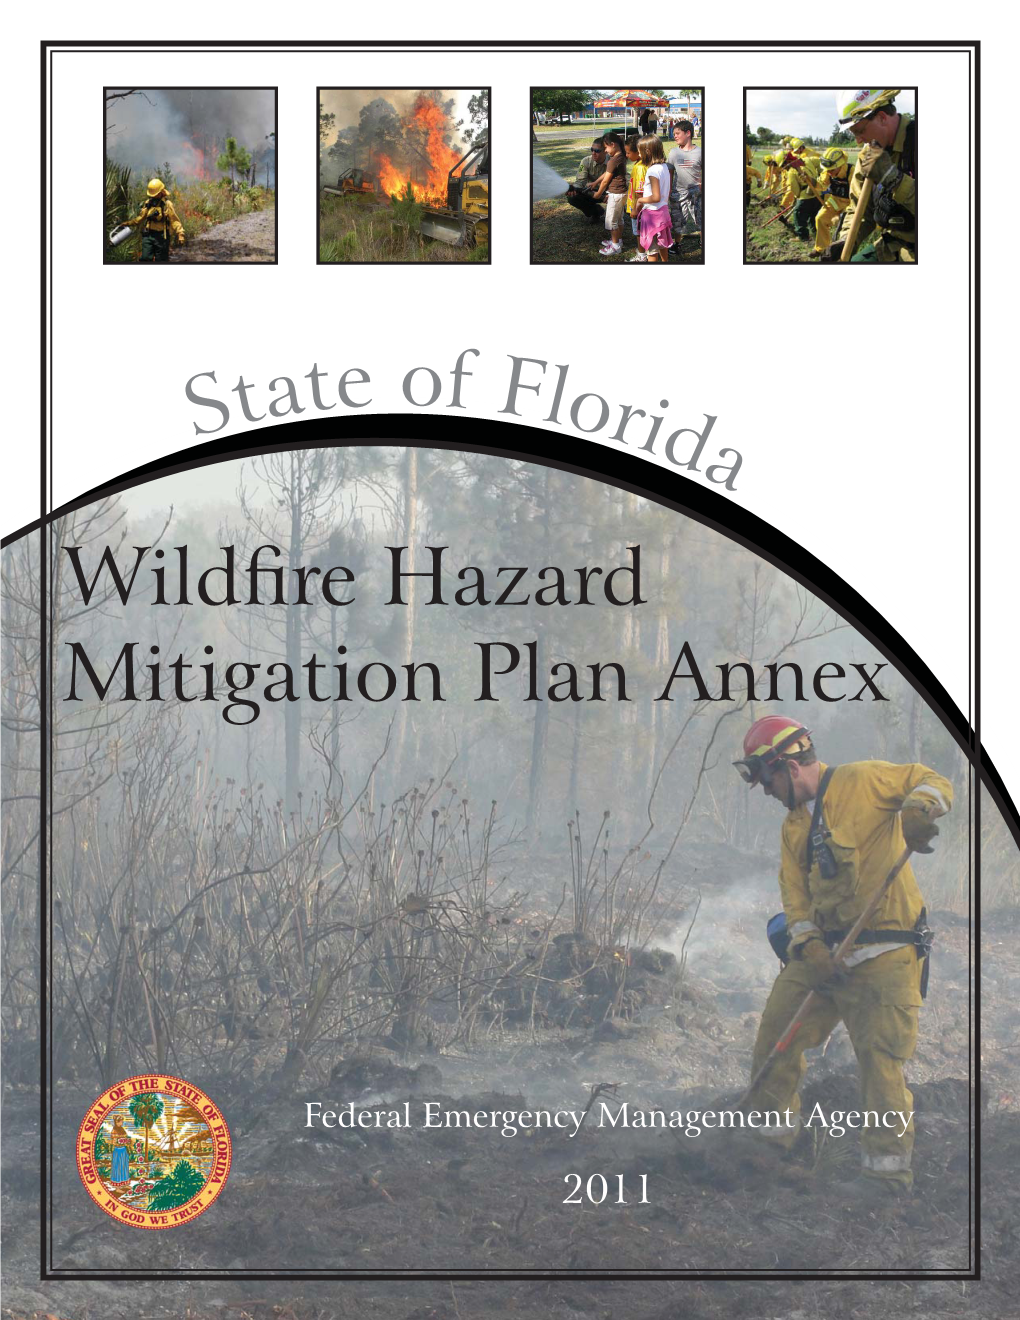 Wildfire Hazard Mitigation Plan Annex